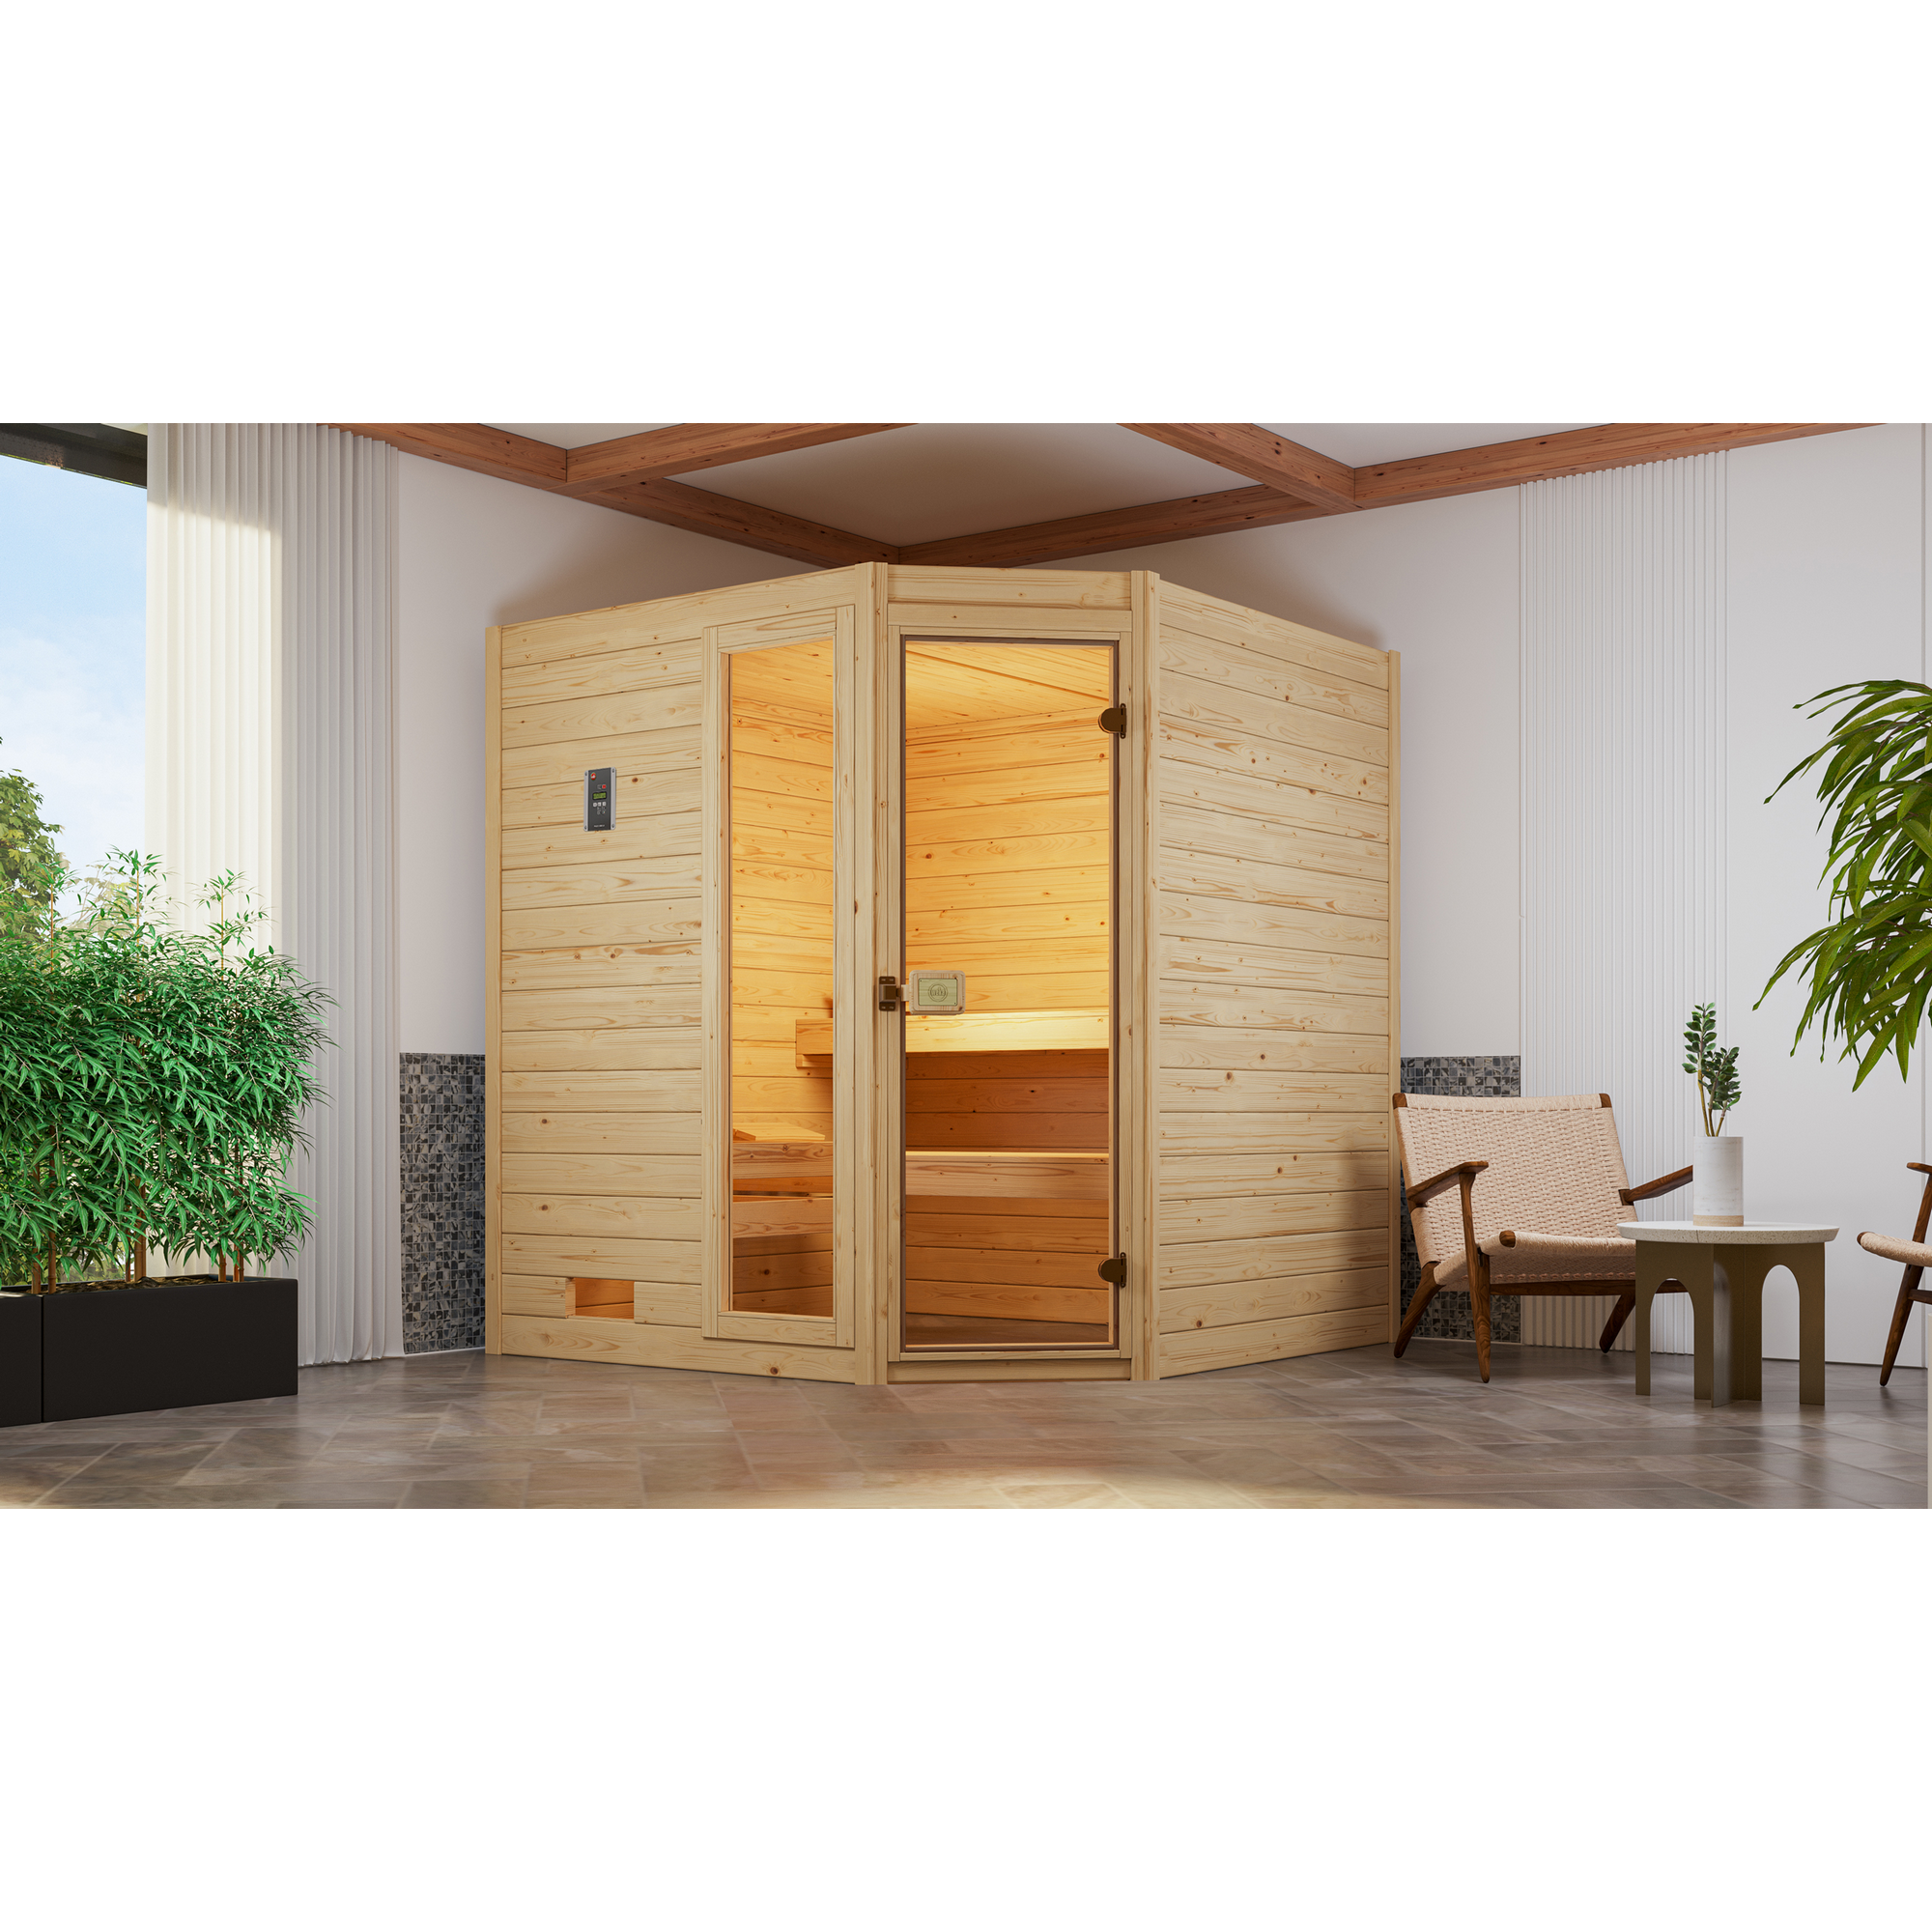 Massivholz-Sauna 'Valida 2 Eck' mit 7,5 kW BioS-Ofenset, Steuerung, Glastür, Fenster 187 x 170 x 203,5 cm + product picture